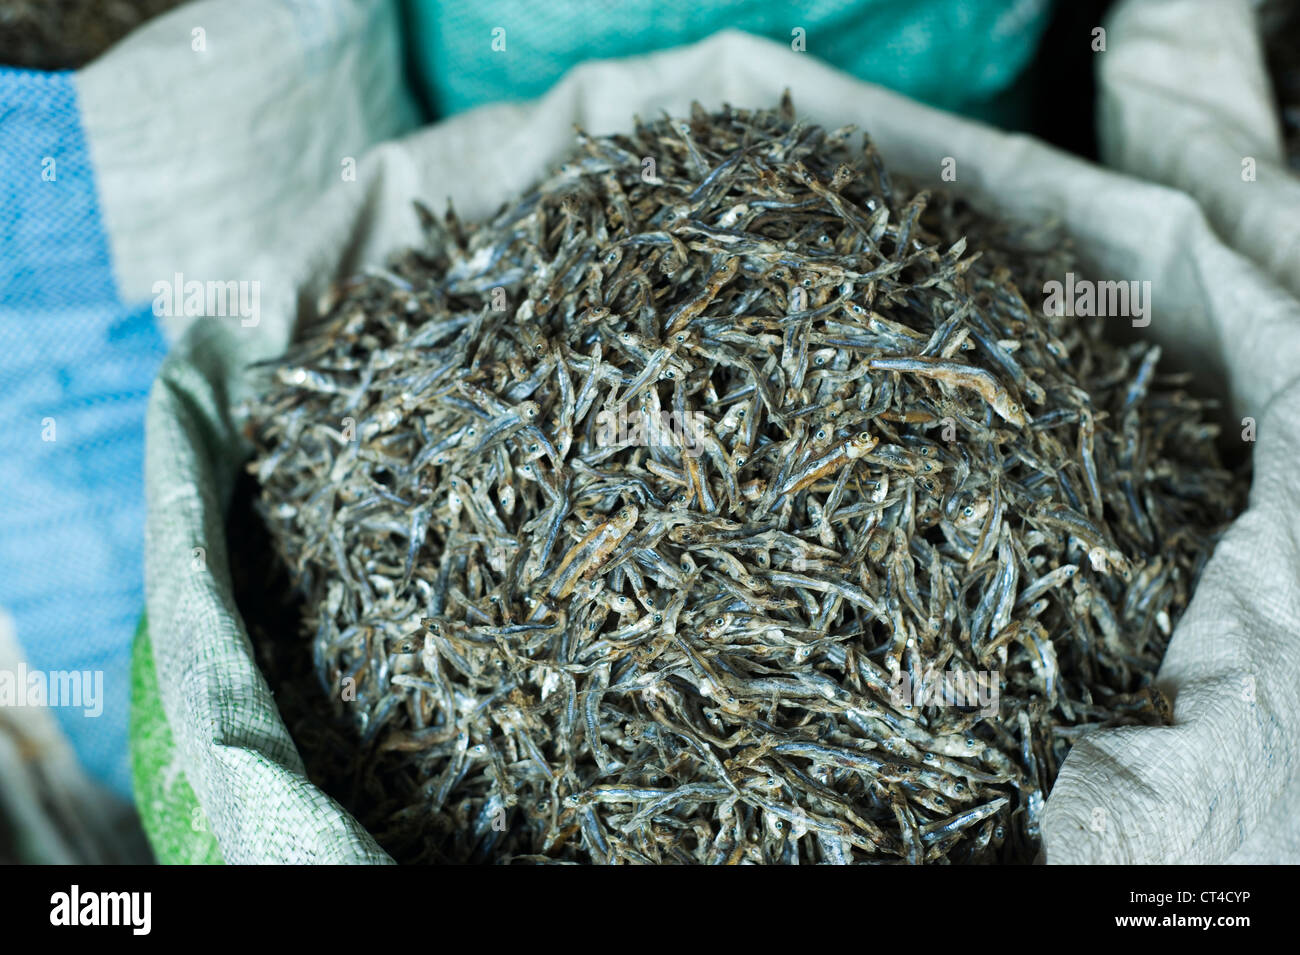 Malaysia, Borneo, Semporna, dried fish at the market Stock Photo